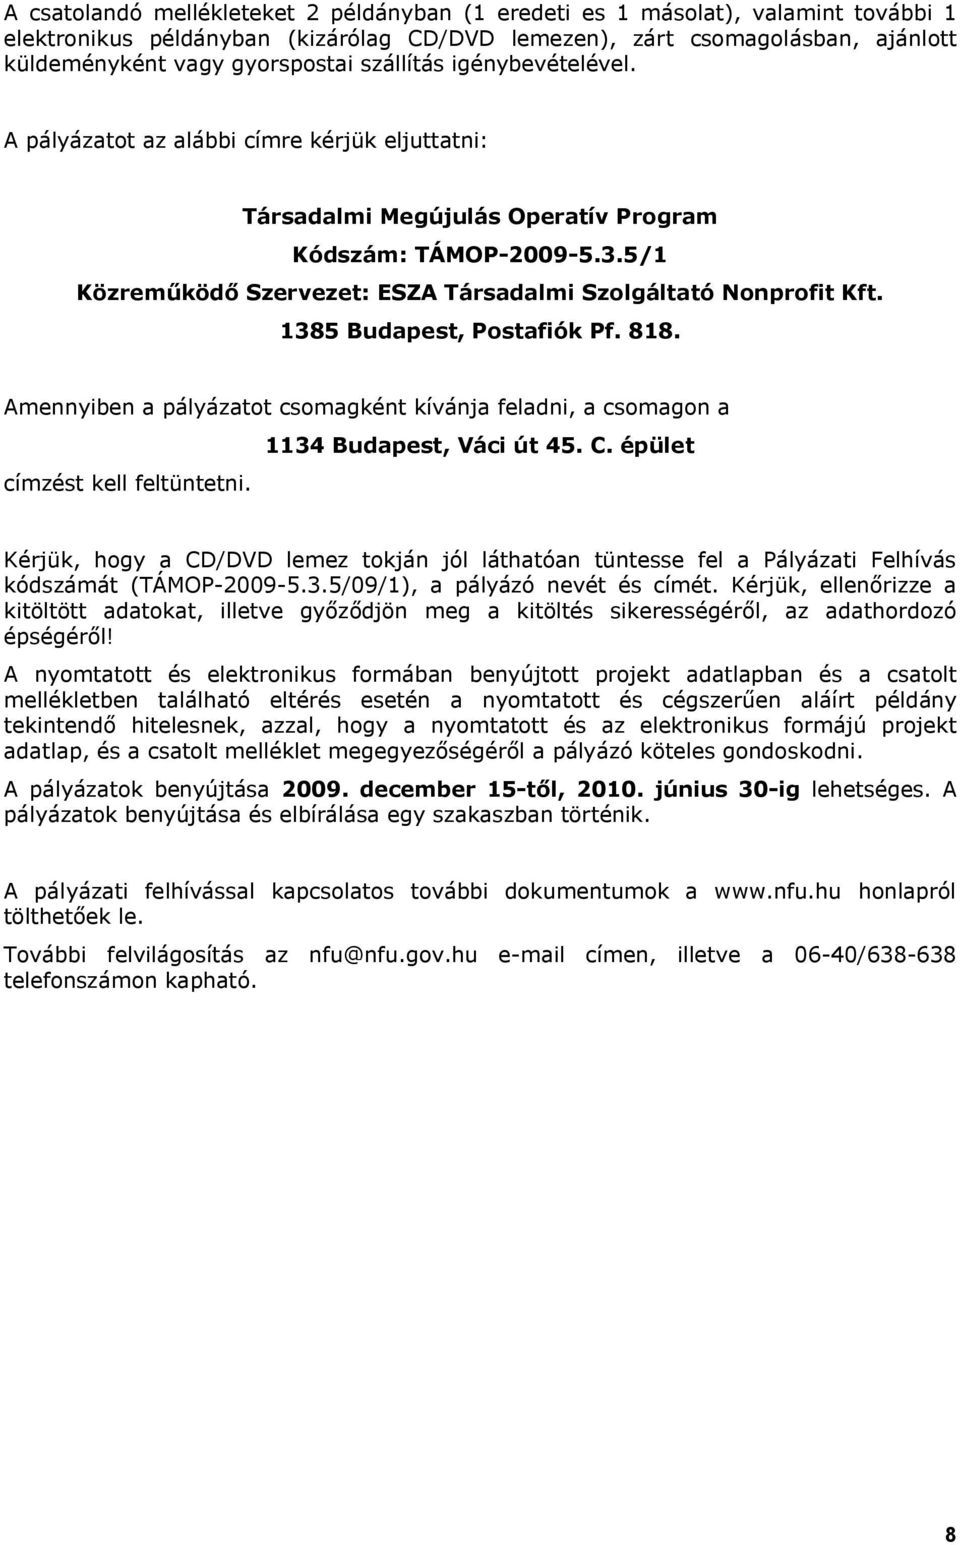 5/1 Közreműködő Szervezet: ESZA Társadalmi Szolgáltató Nonprofit Kft. 1385 Budapest, Postafiók Pf. 818. Amennyiben a pályázatot csomagként kívánja feladni, a csomagon a címzést kell feltüntetni.